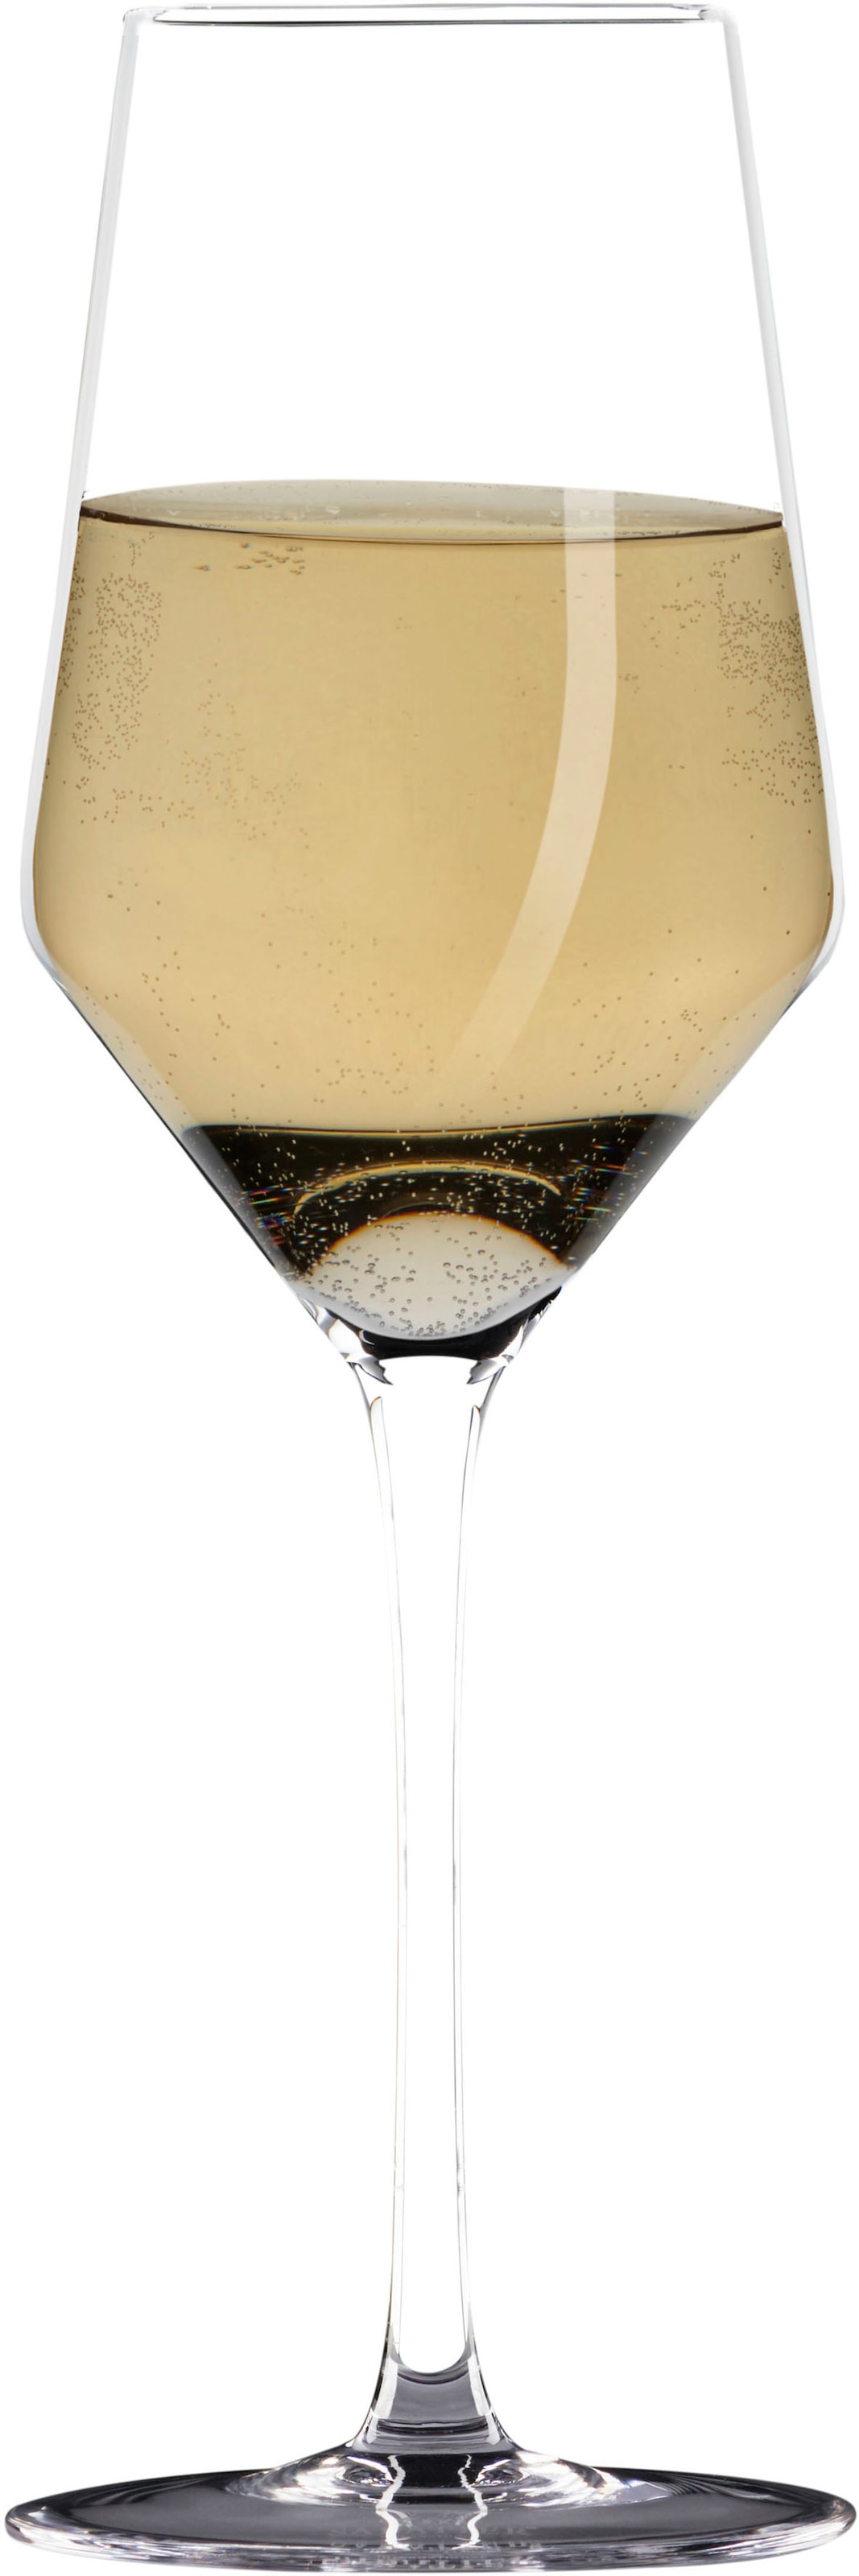 SABATIER International Weißweinglas, (Set, 2 tlg., 2 x Weißwein Kristallglas), Inhalt 0,4 L, 2-teilig